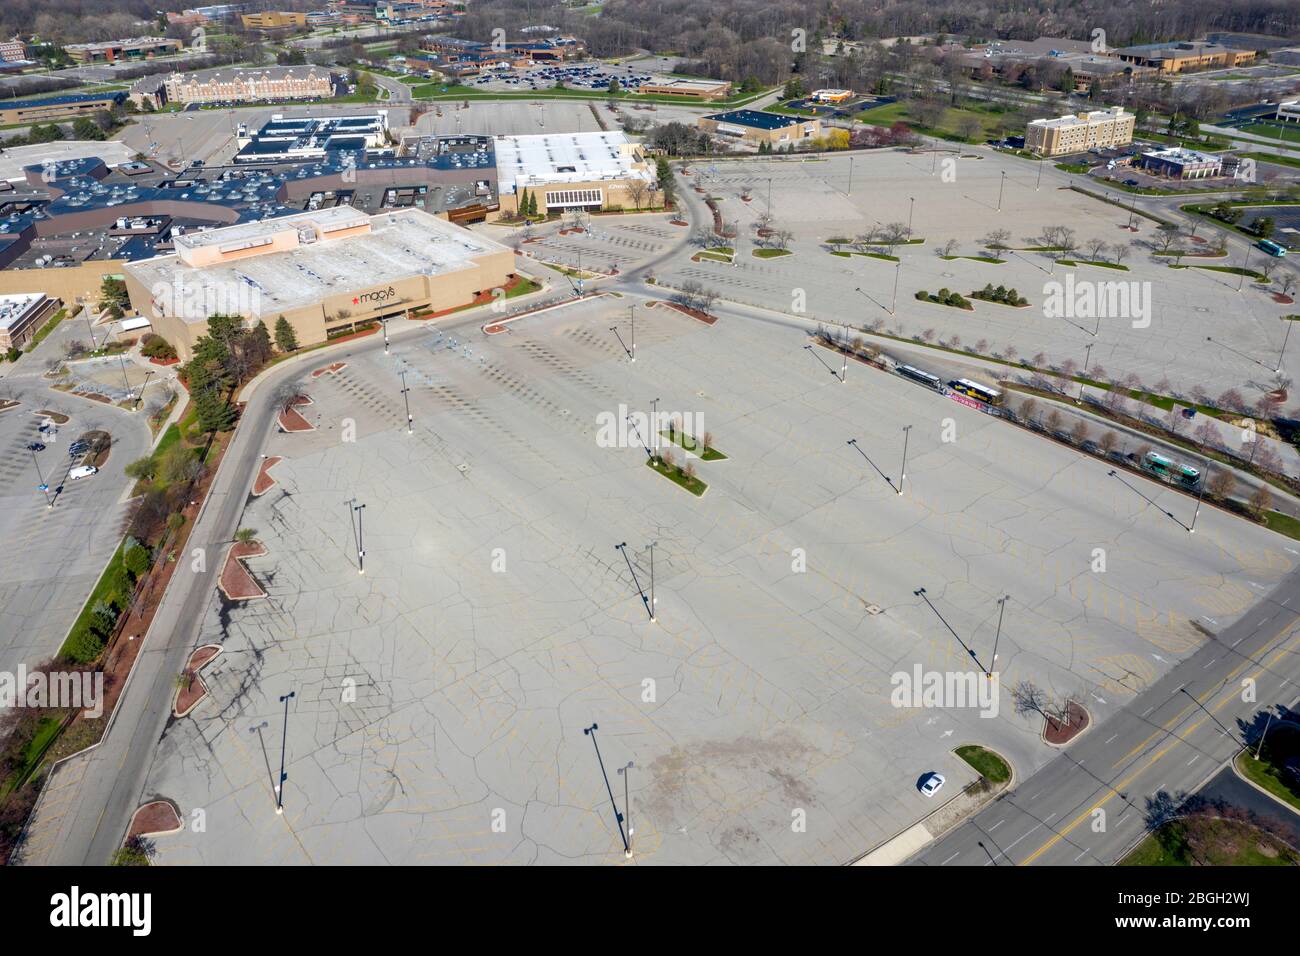 Dearborn, Michigan, USA. April 2020. Das Fairlane Town Center, ein großes regionales Einkaufszentrum in den Vororten von Detroit, ist wegen der Coronavirus-Pandemie geschlossen. Die Parkplätze für Macy's ahd JC Penny (rechts) sind leer. Kredit: Jim West/Alamy Live News Stockfoto